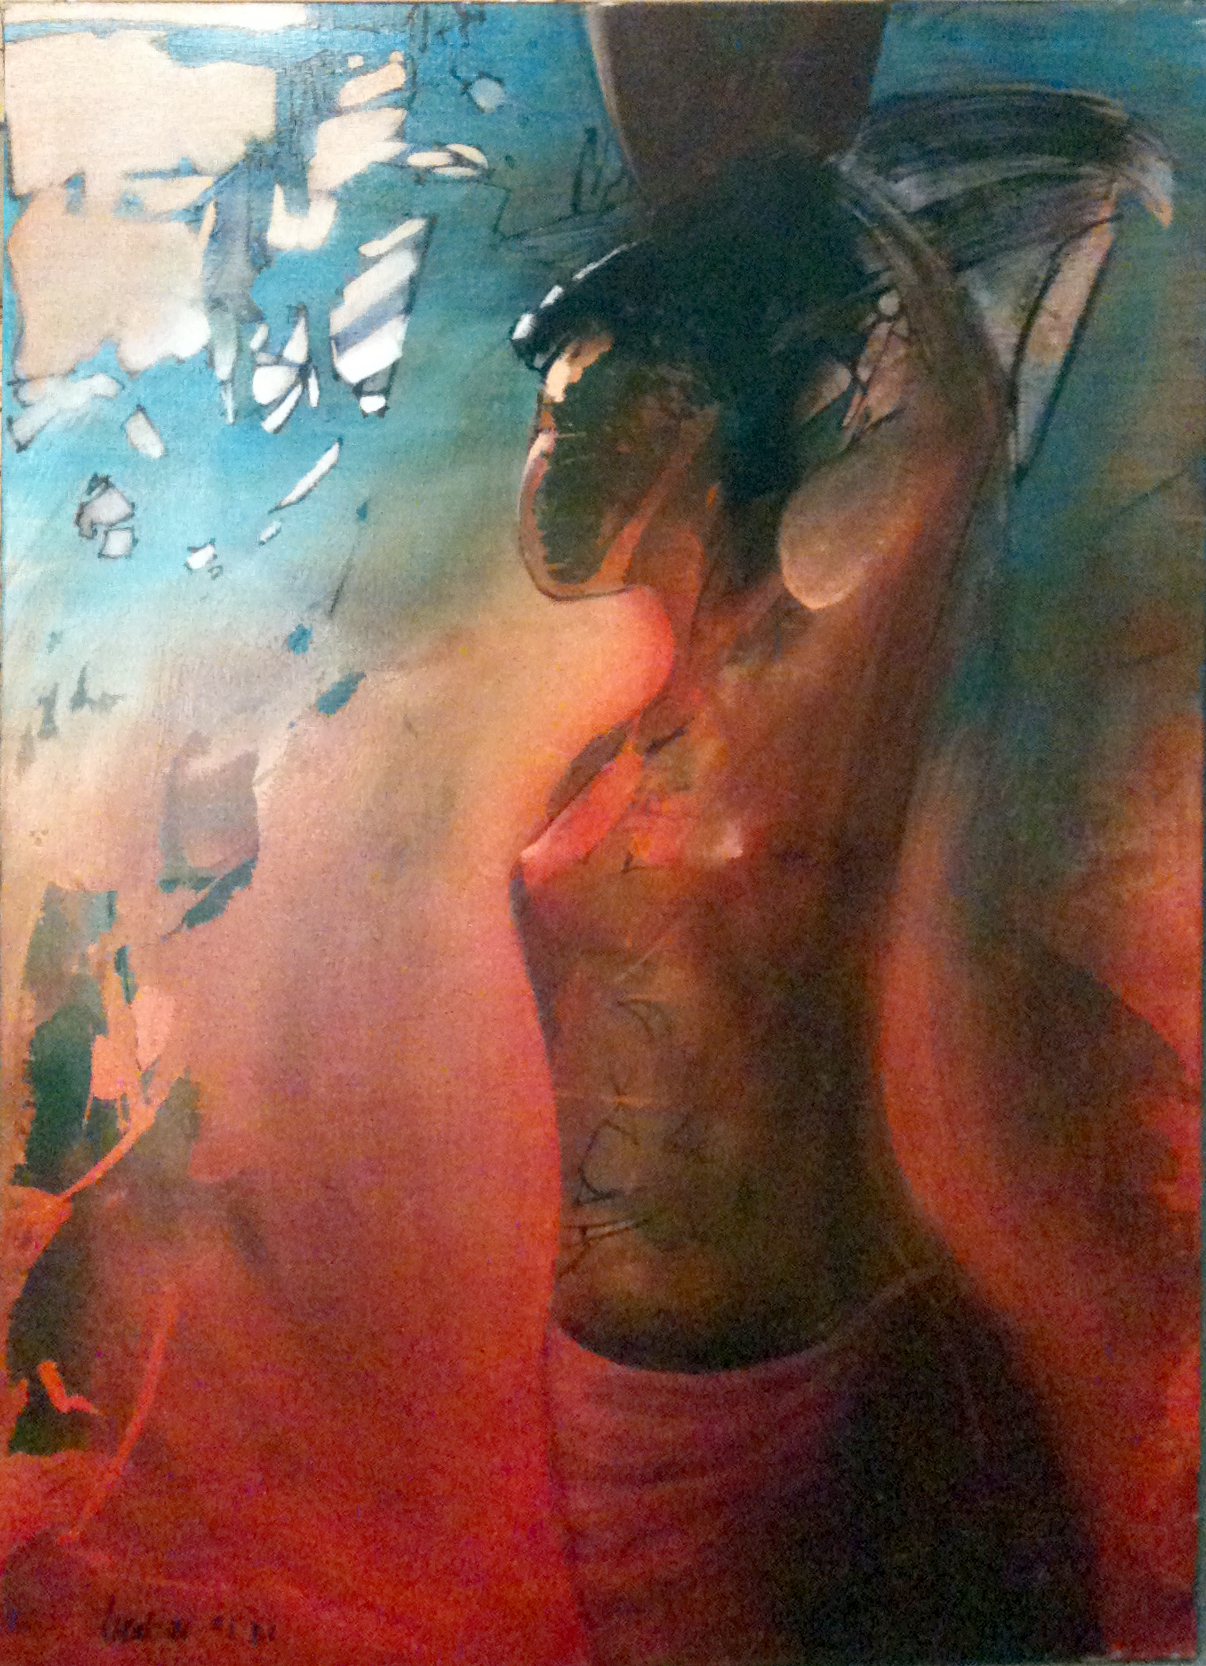 AFRIQUE - 97 cm x 146 cm - Acrylique sur toile